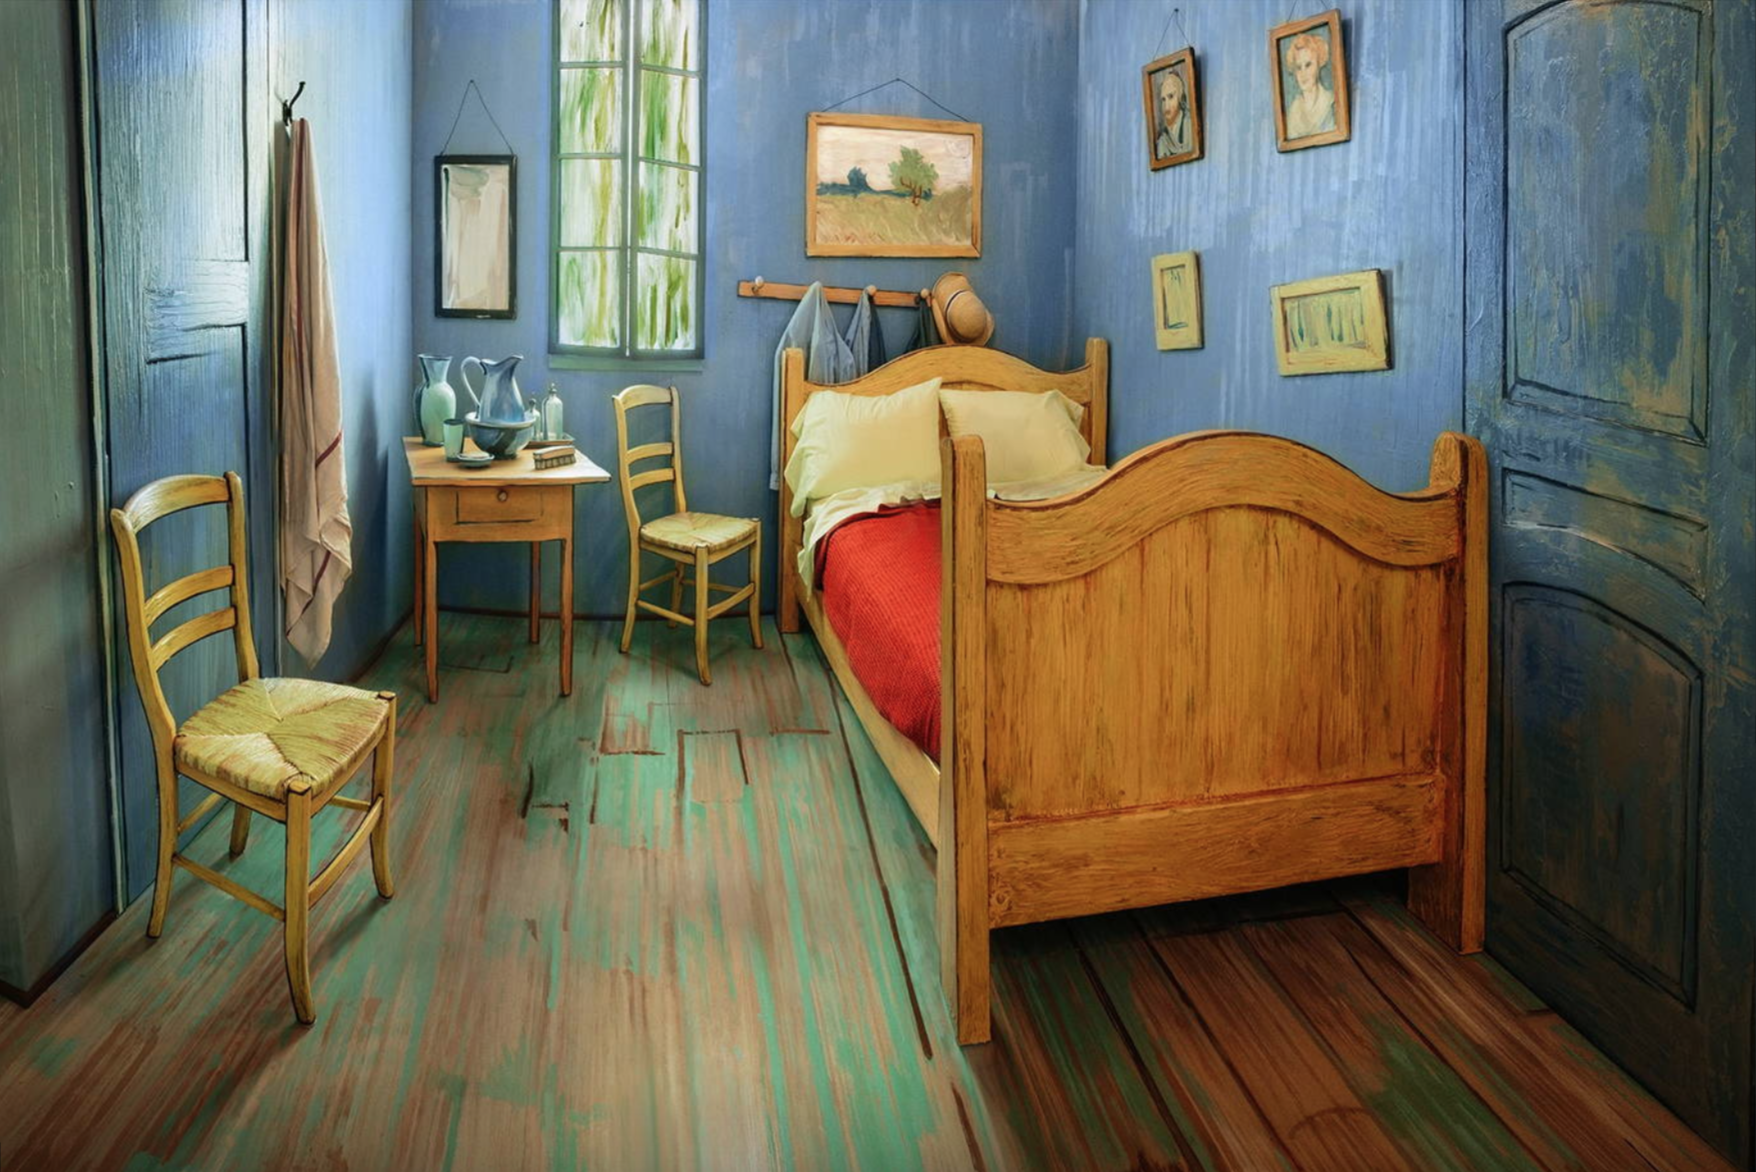 Miete Van Goghs Schlafzimmer über AirBnB